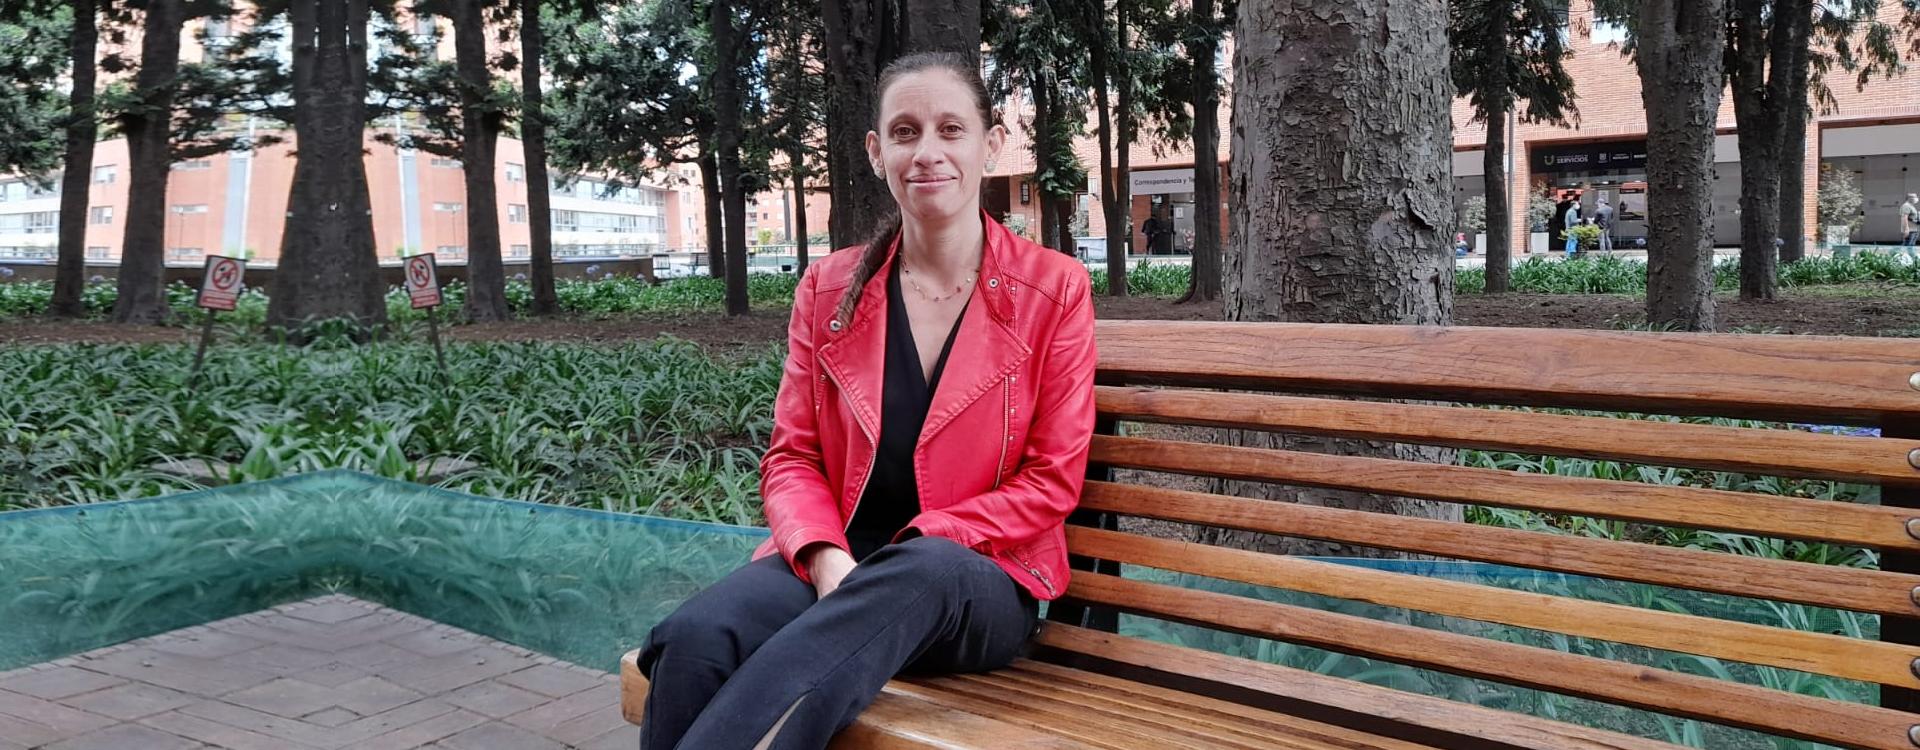 Diana Torres, mujer de Bogotana de barrios Unidos